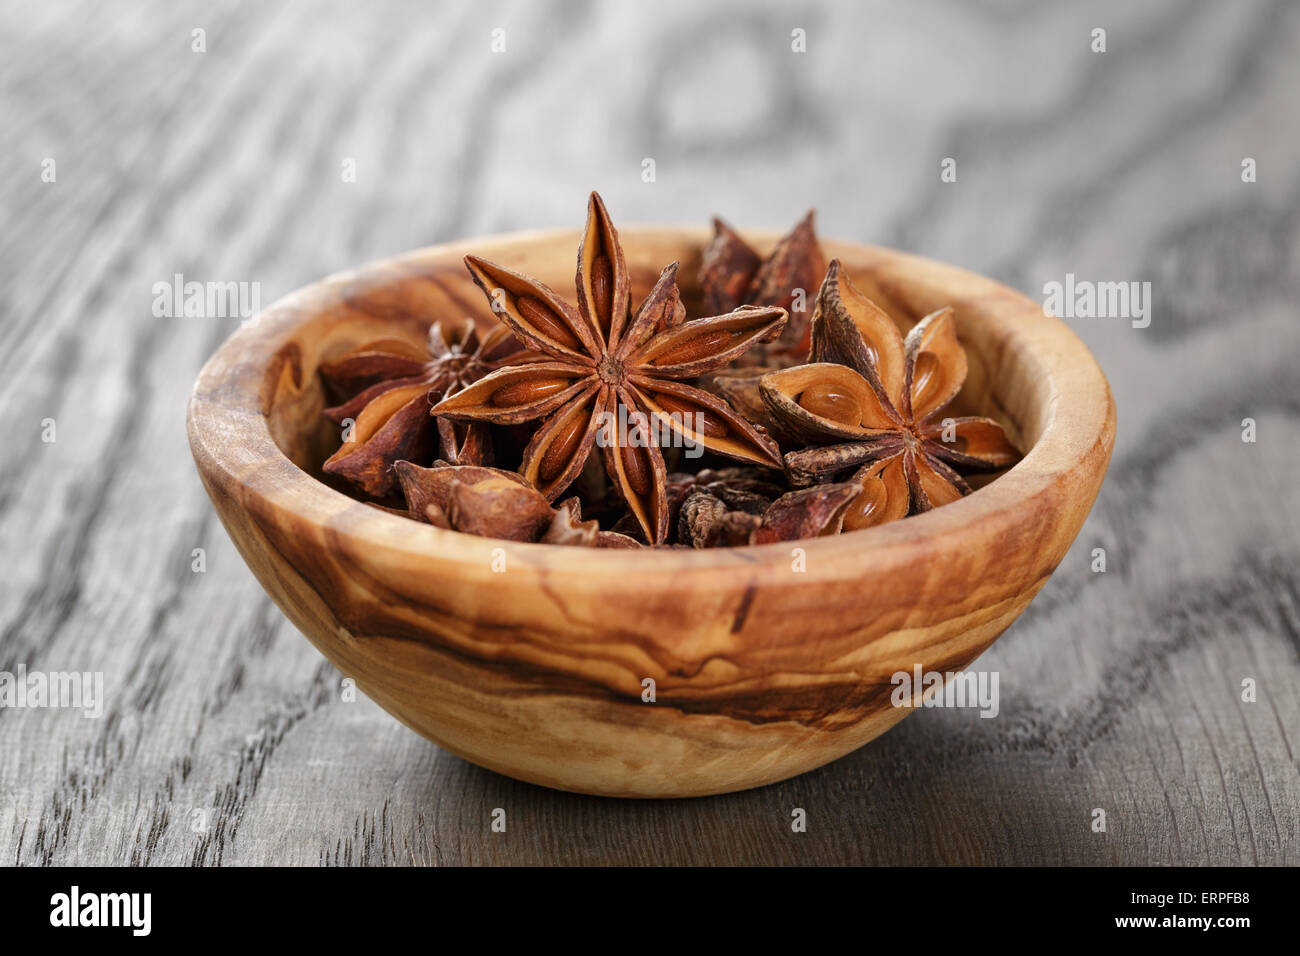 Anice stelle nella ciotola sul vecchio tavolo in legno di quercia close up foto Foto Stock